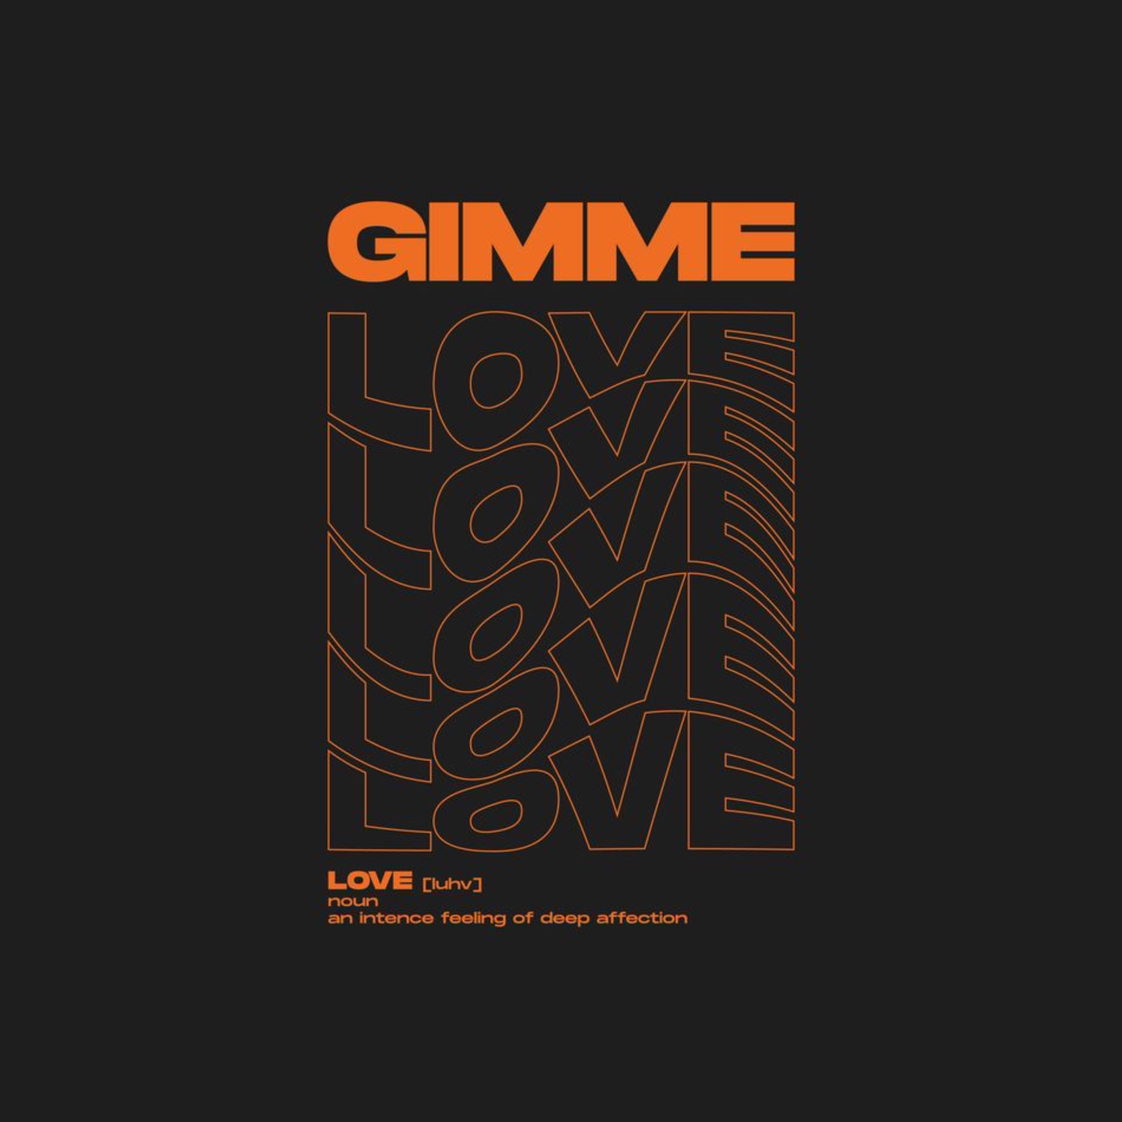 ดาวน์โหลด GIMME LOVE